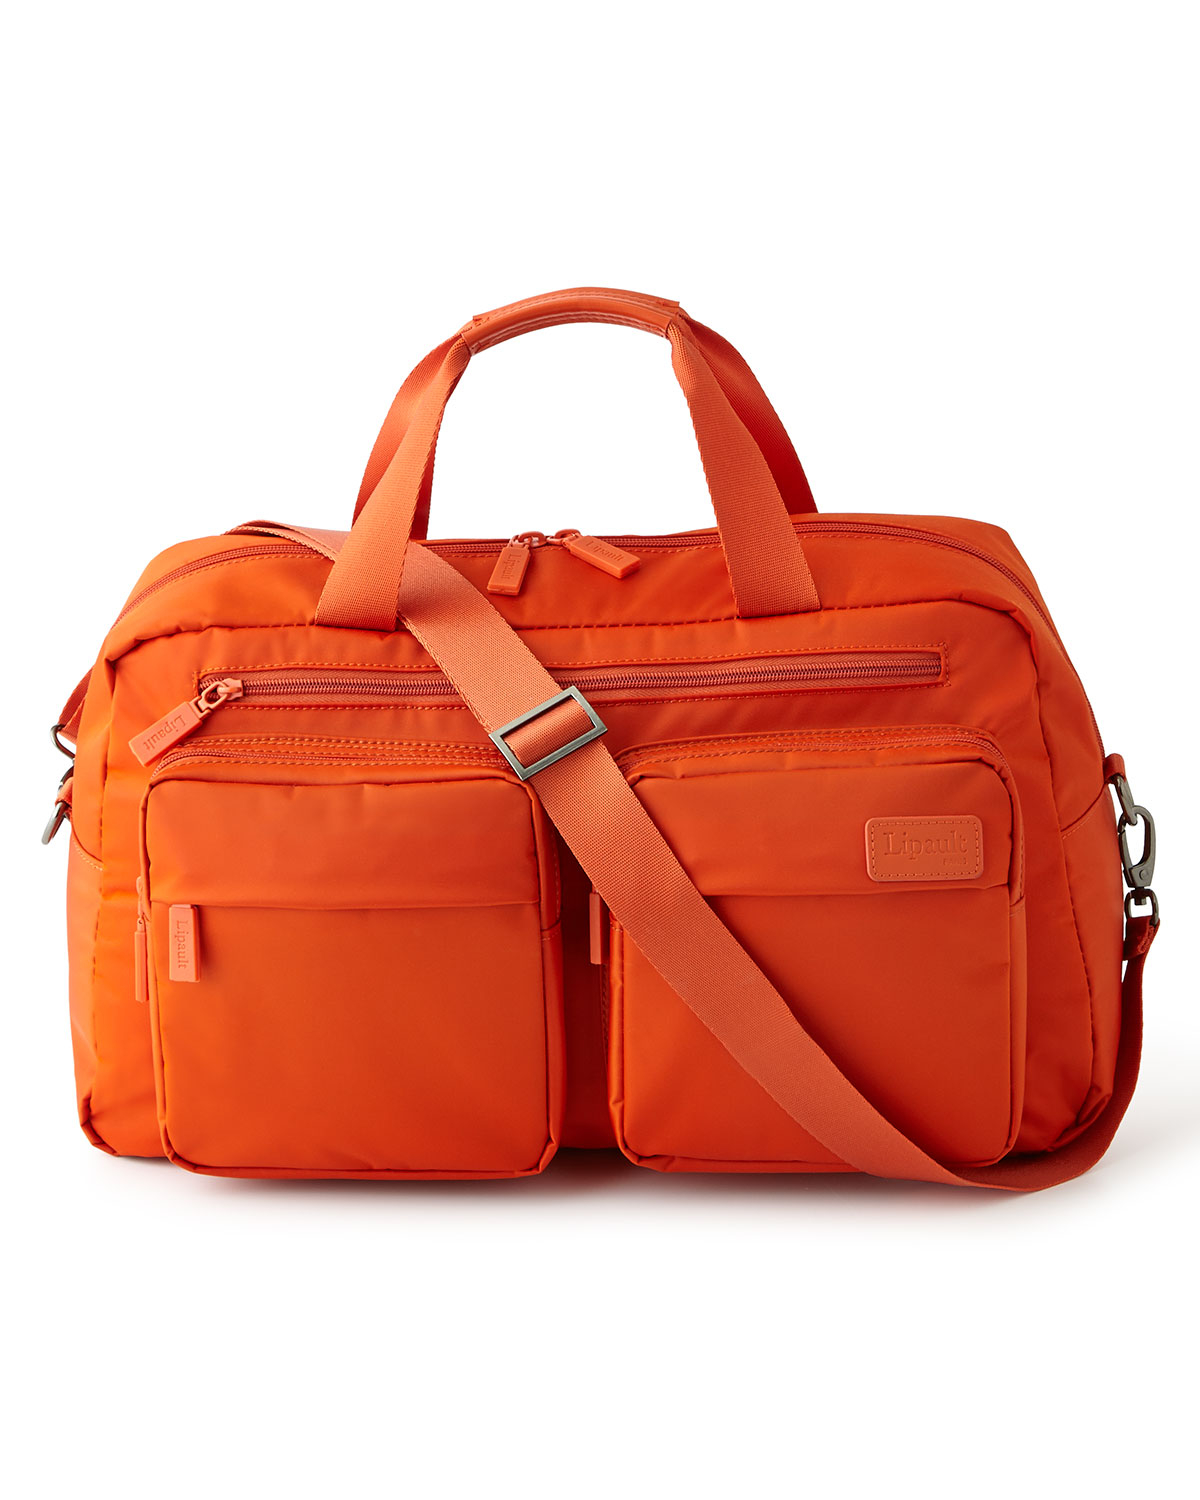 Lyst - Lipault Tangerine 19 Weekend Bag in Orange for Men